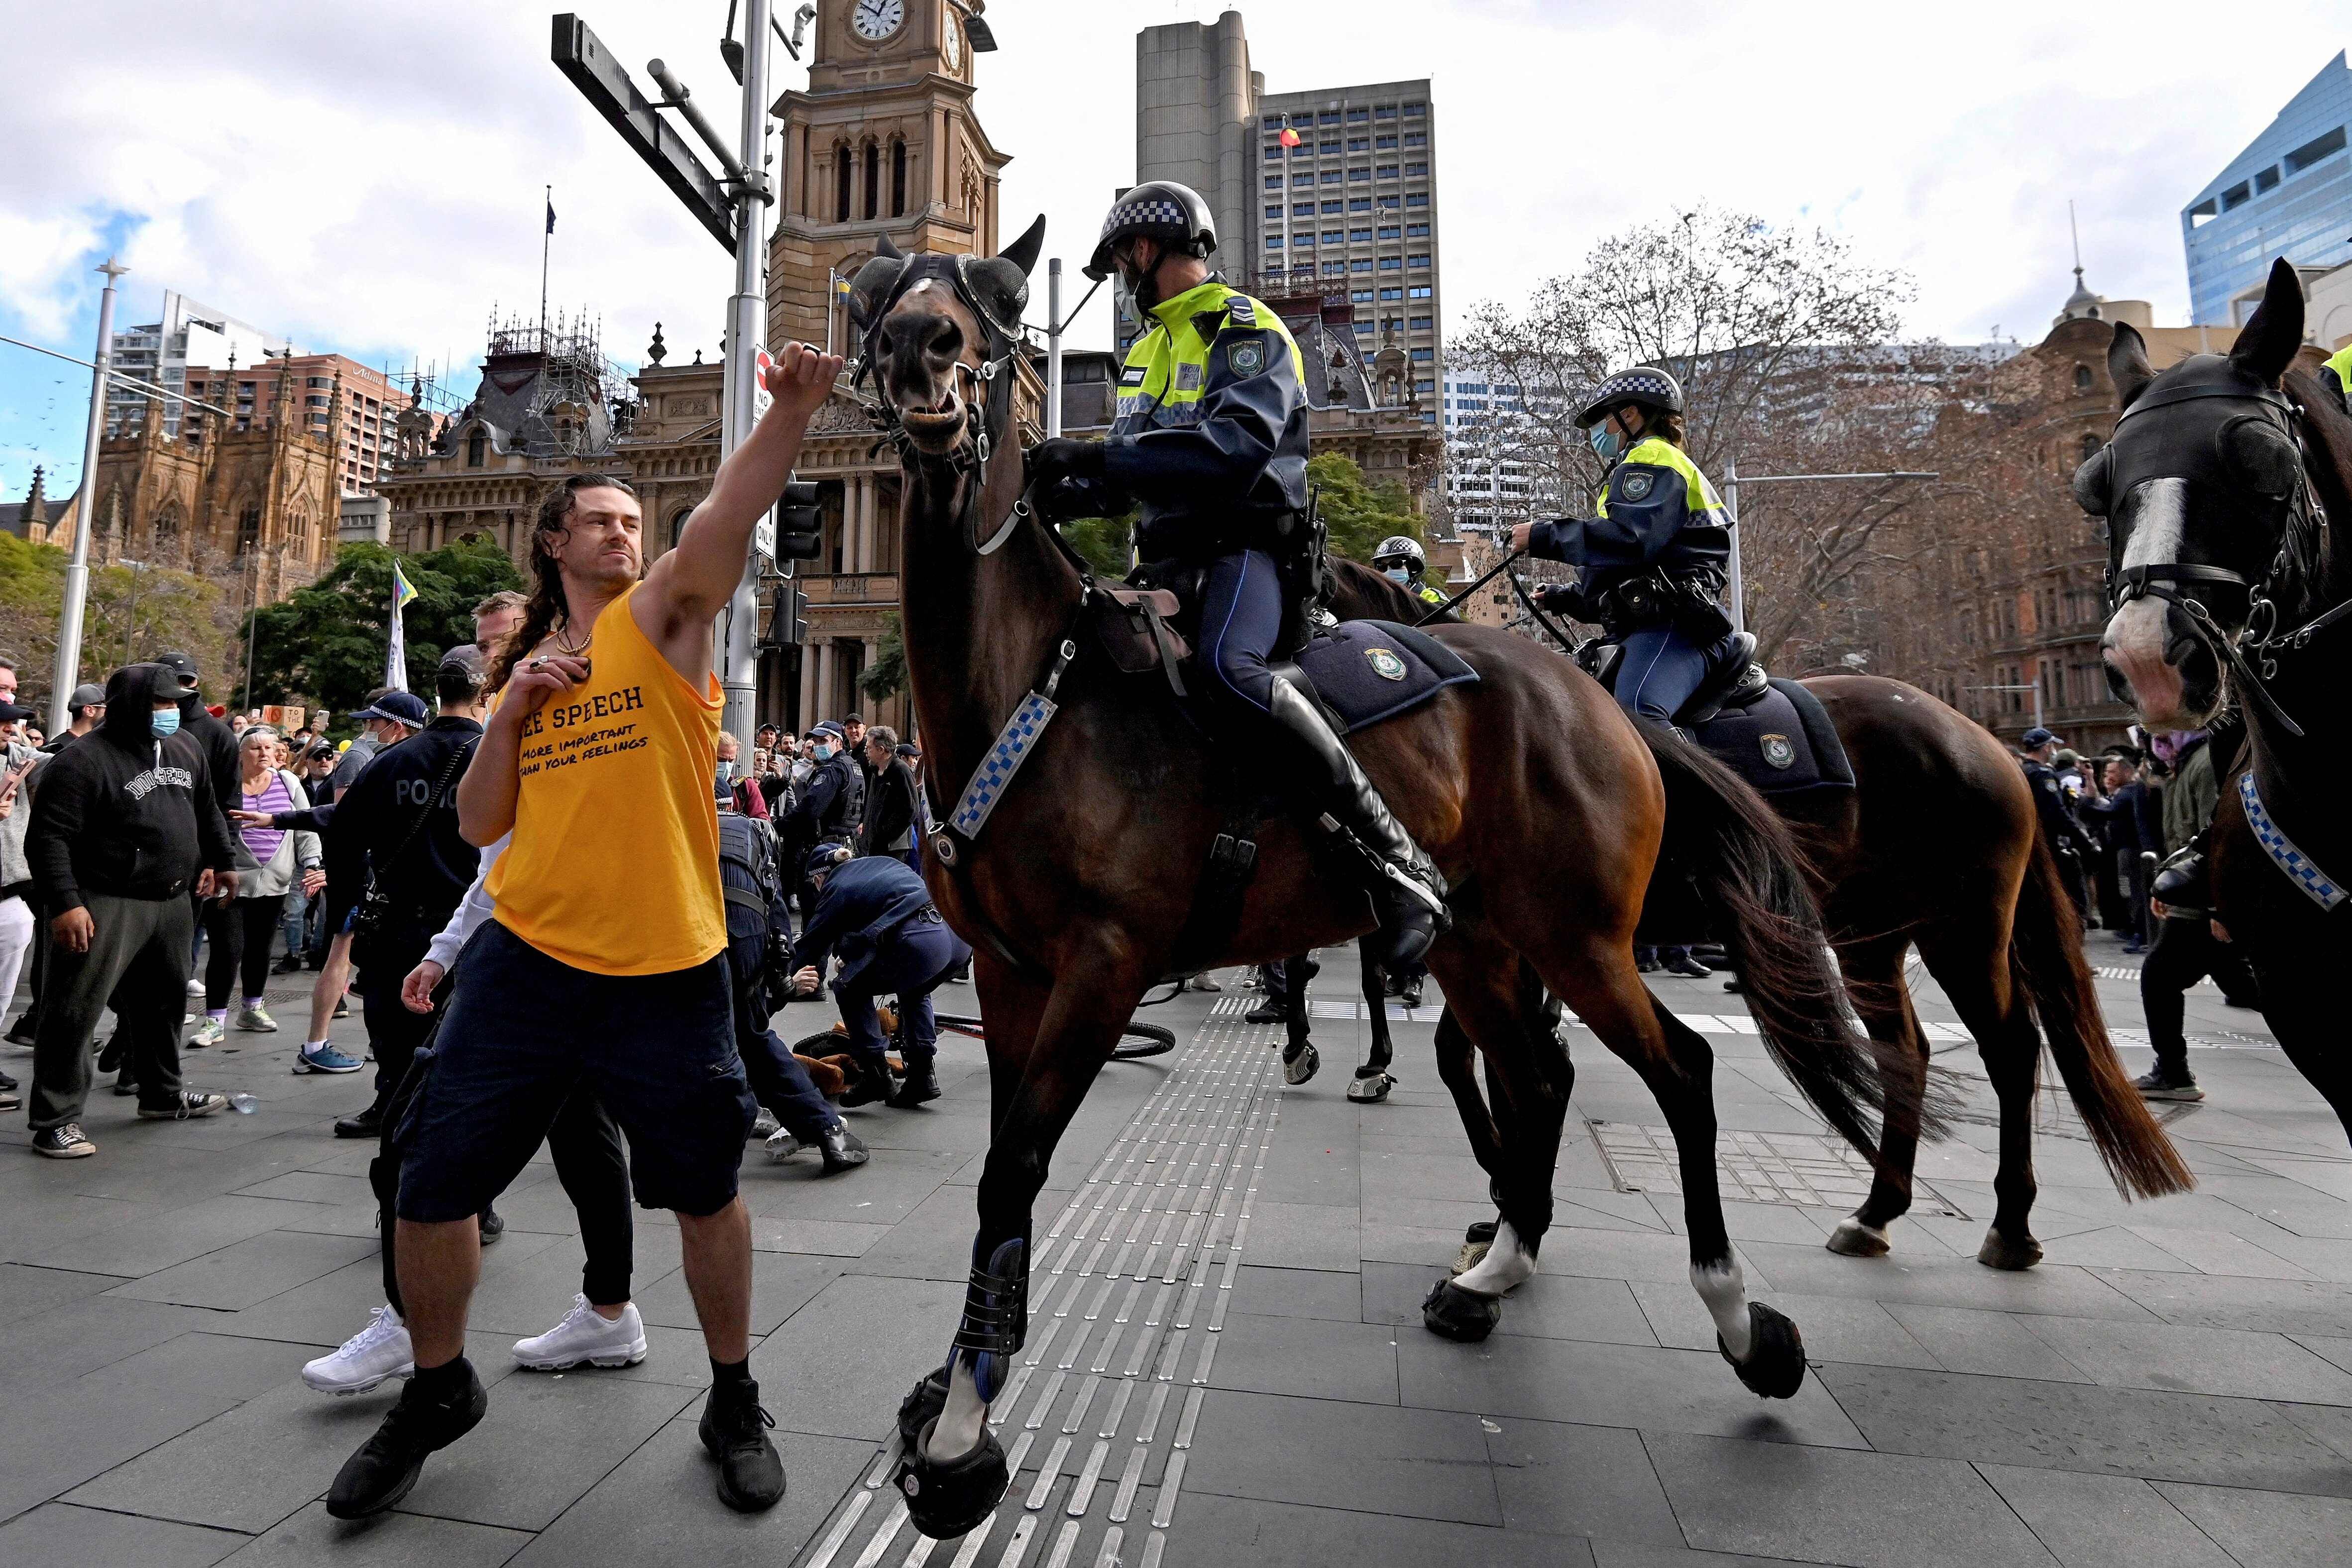 Un manifestante intenta apartar un caballo de la policía durante una manifestación contra las restricciones, en Sídney el 24 de julio.